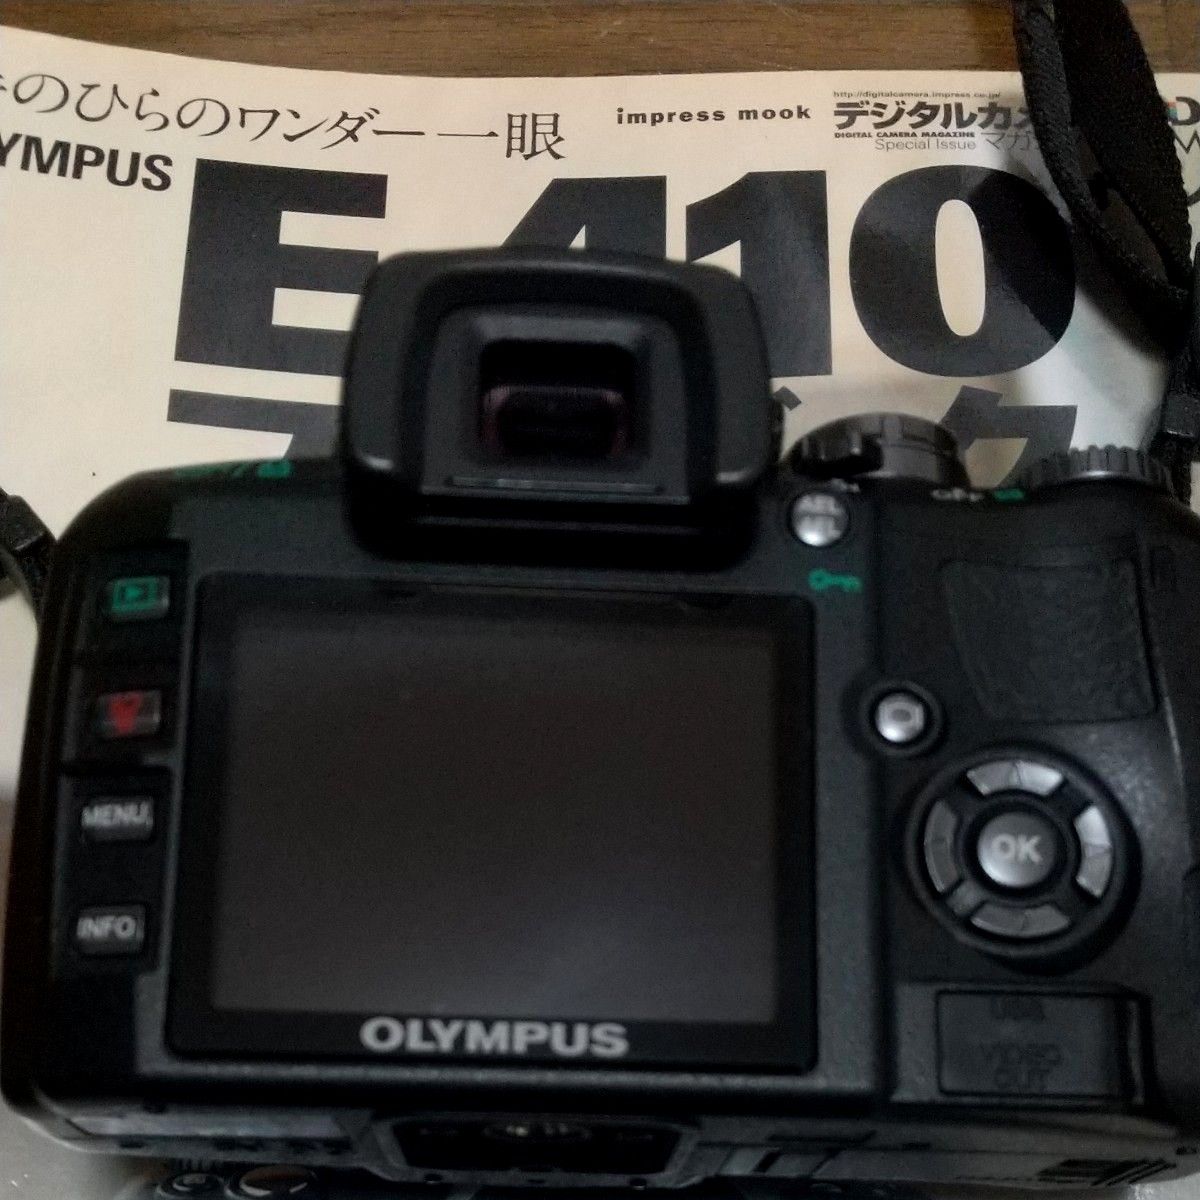 【美品】OLYMPUS オリンパス E-410 ダブルズームキット デジタル一眼レフカメラ おまけ6点付き お得なセット